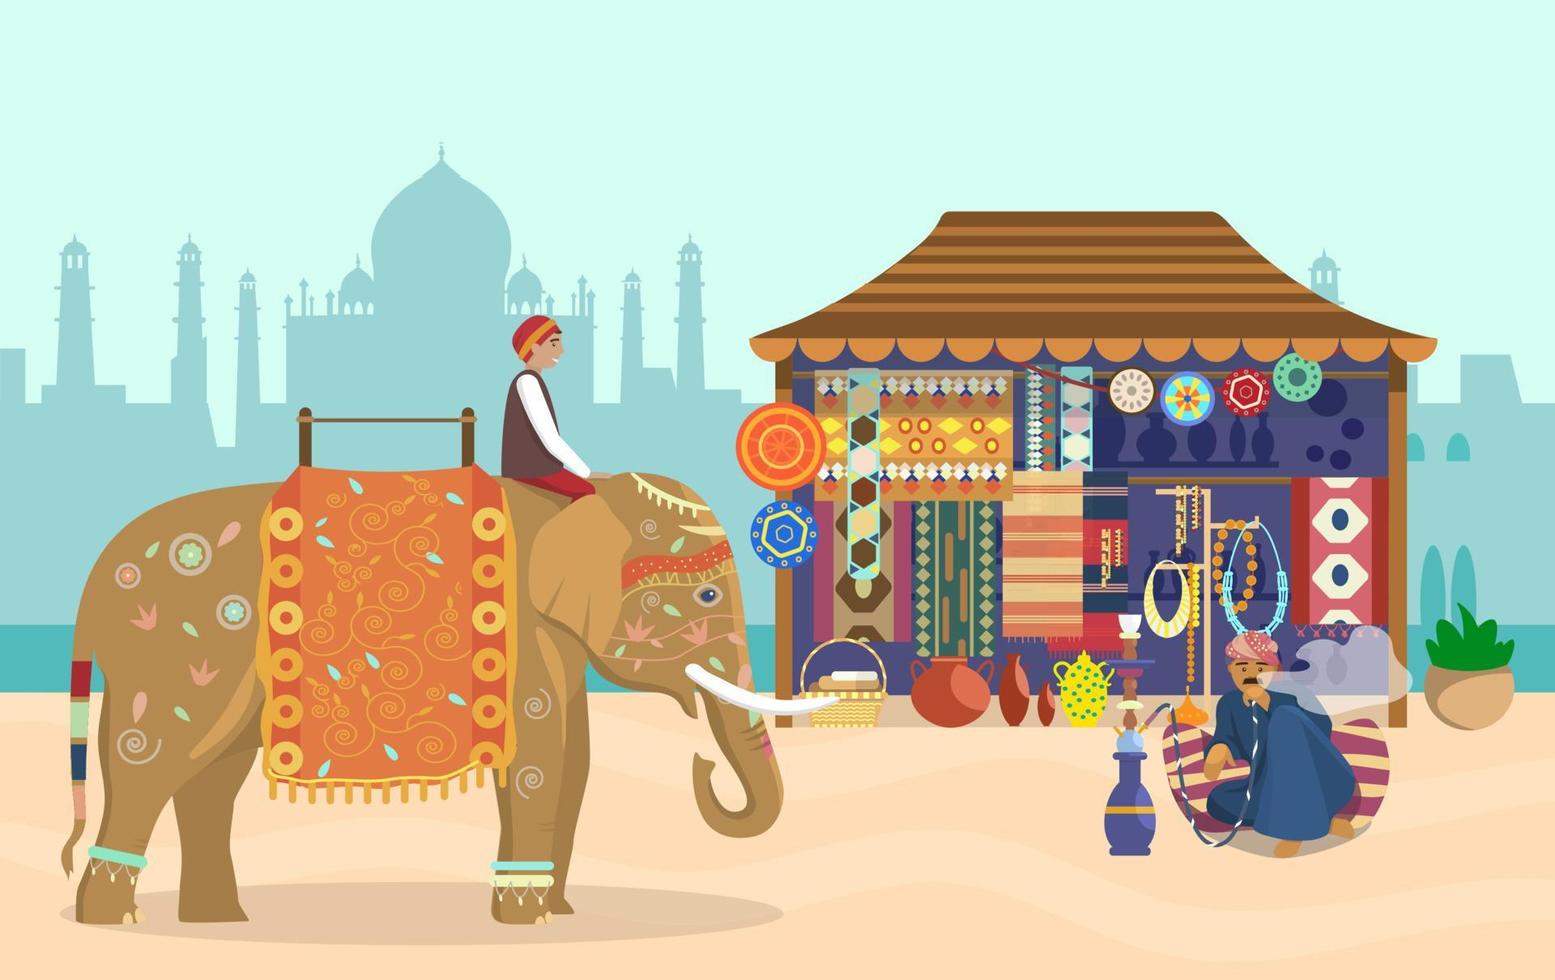 vektor illustration av indiska livet. elefantryttare på dekorerad elefant, taj mahal siluett, souvenirbutik, keramik, mattor, tyger, smycken, man som röker vattenpipa sitter på en kudde.